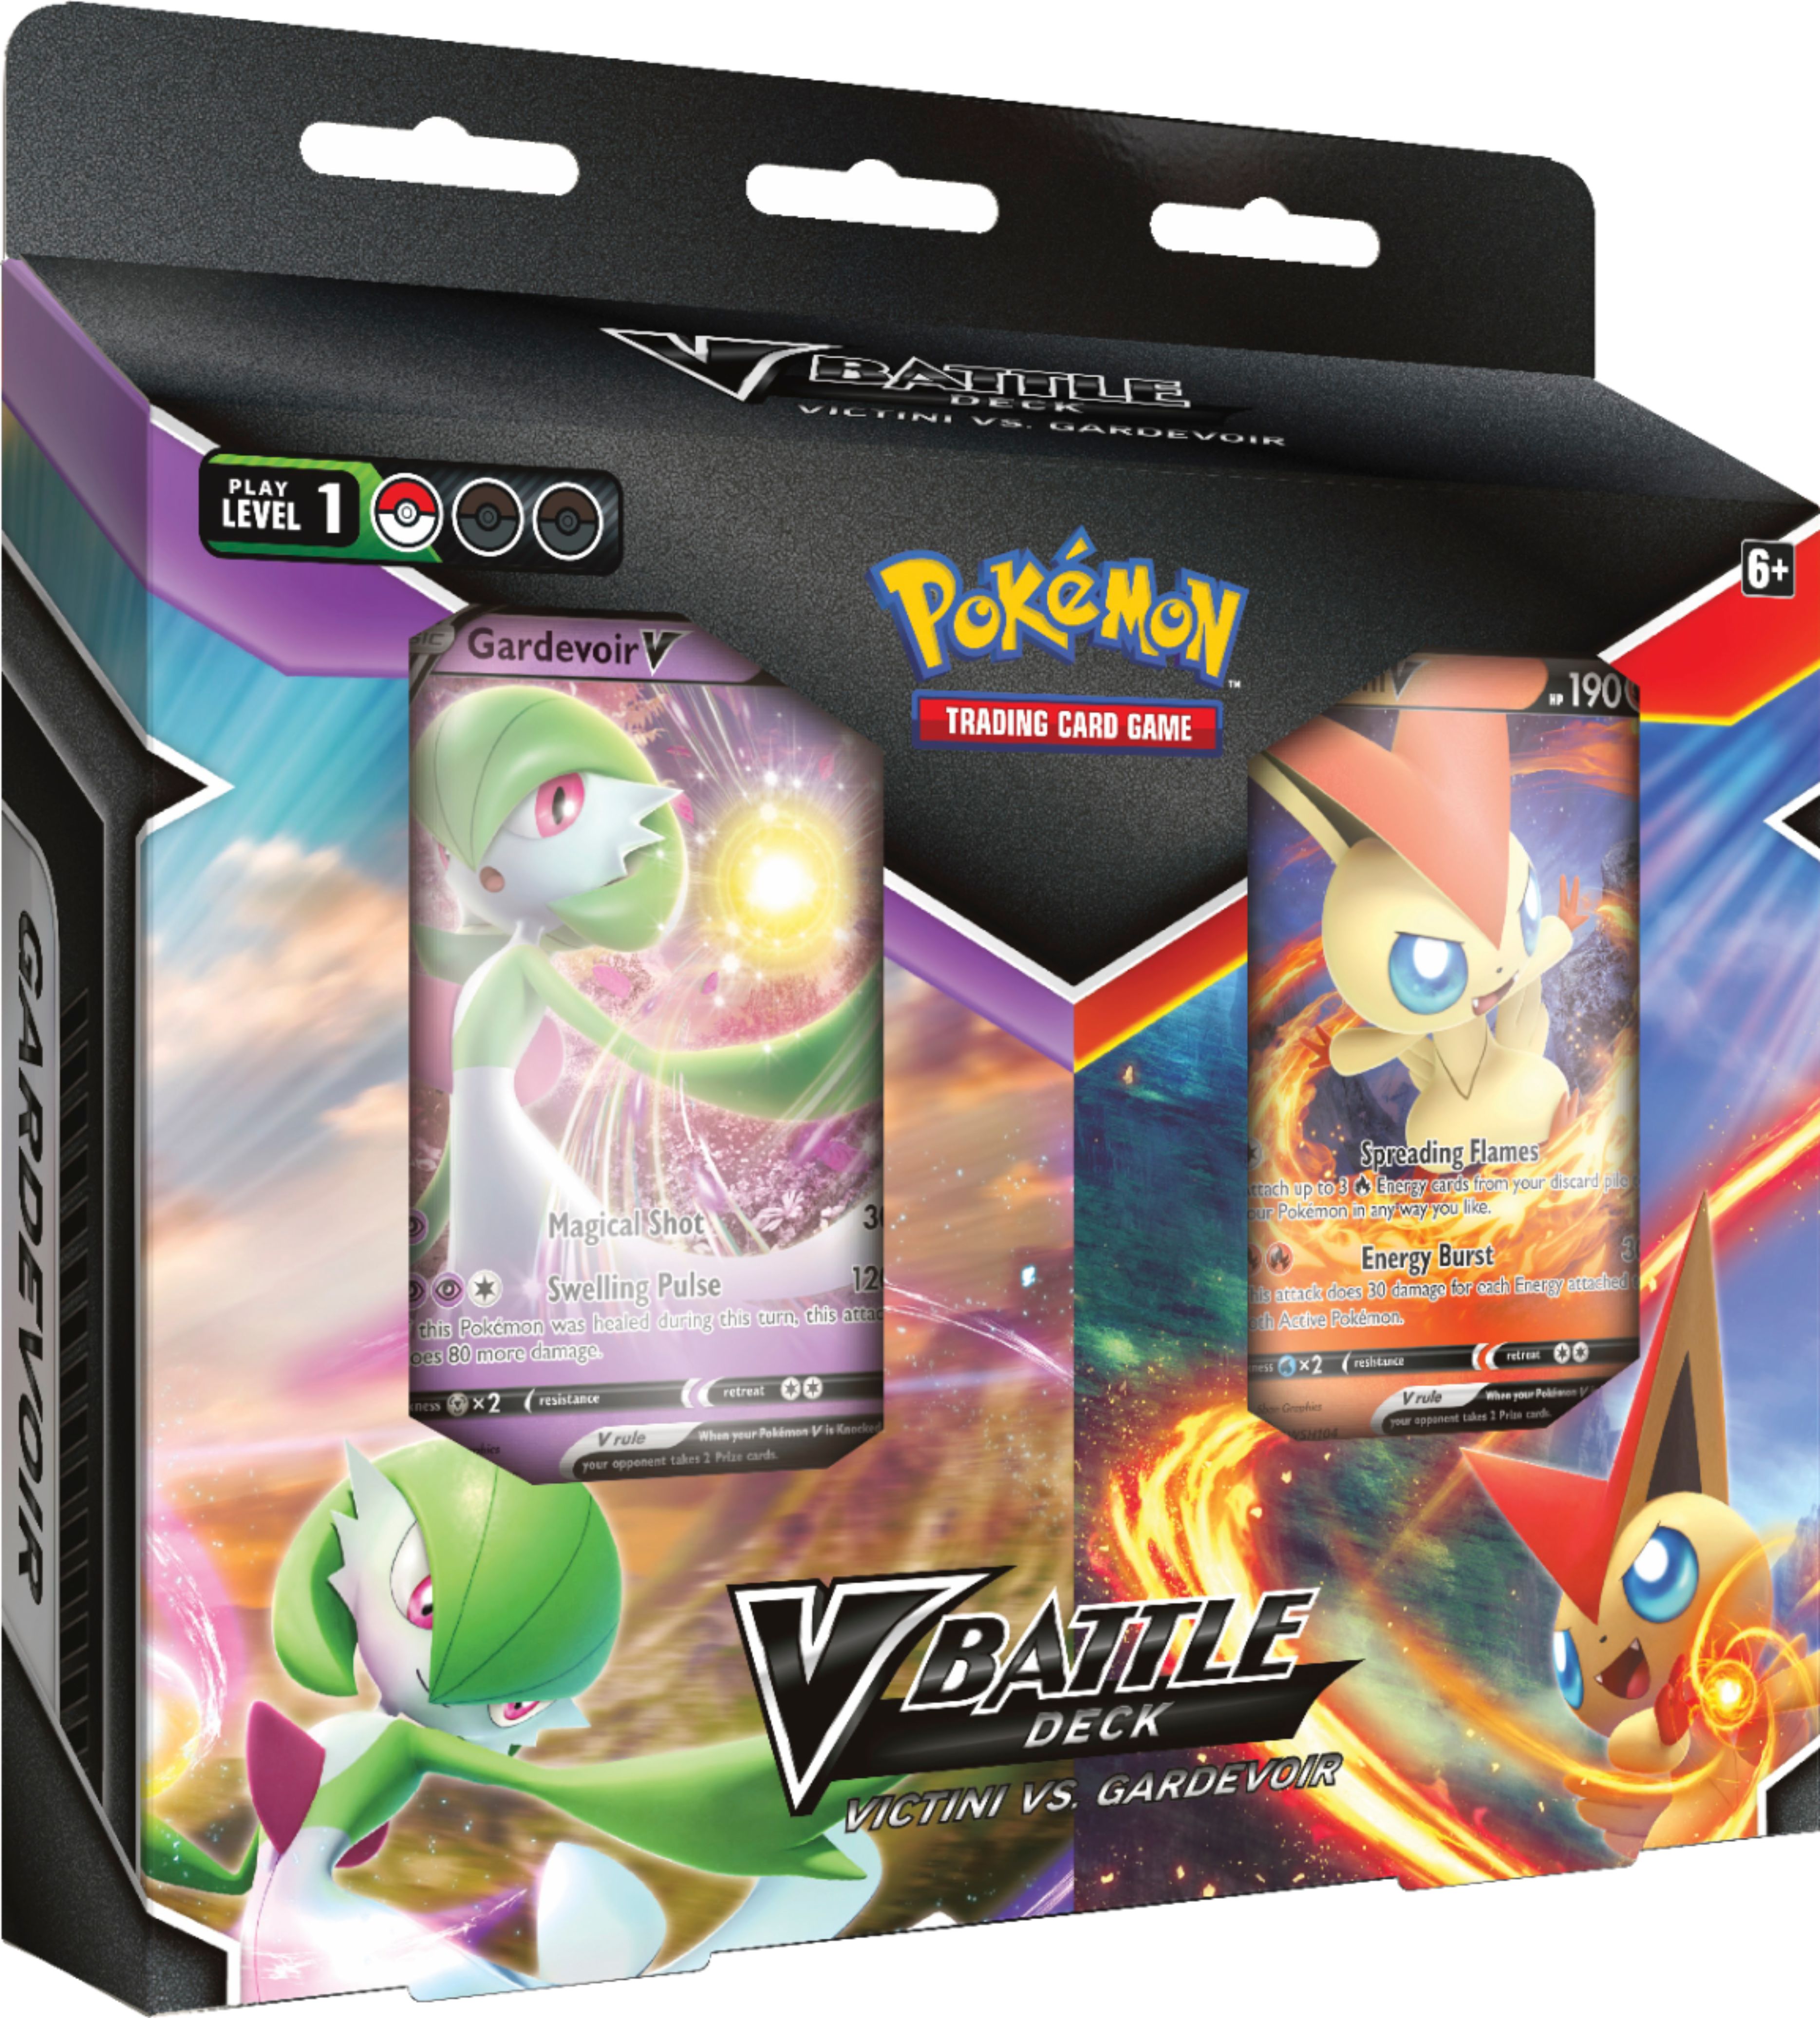 Busca: Gardevoir, Busca de cards, produtos e preços de Pokemon